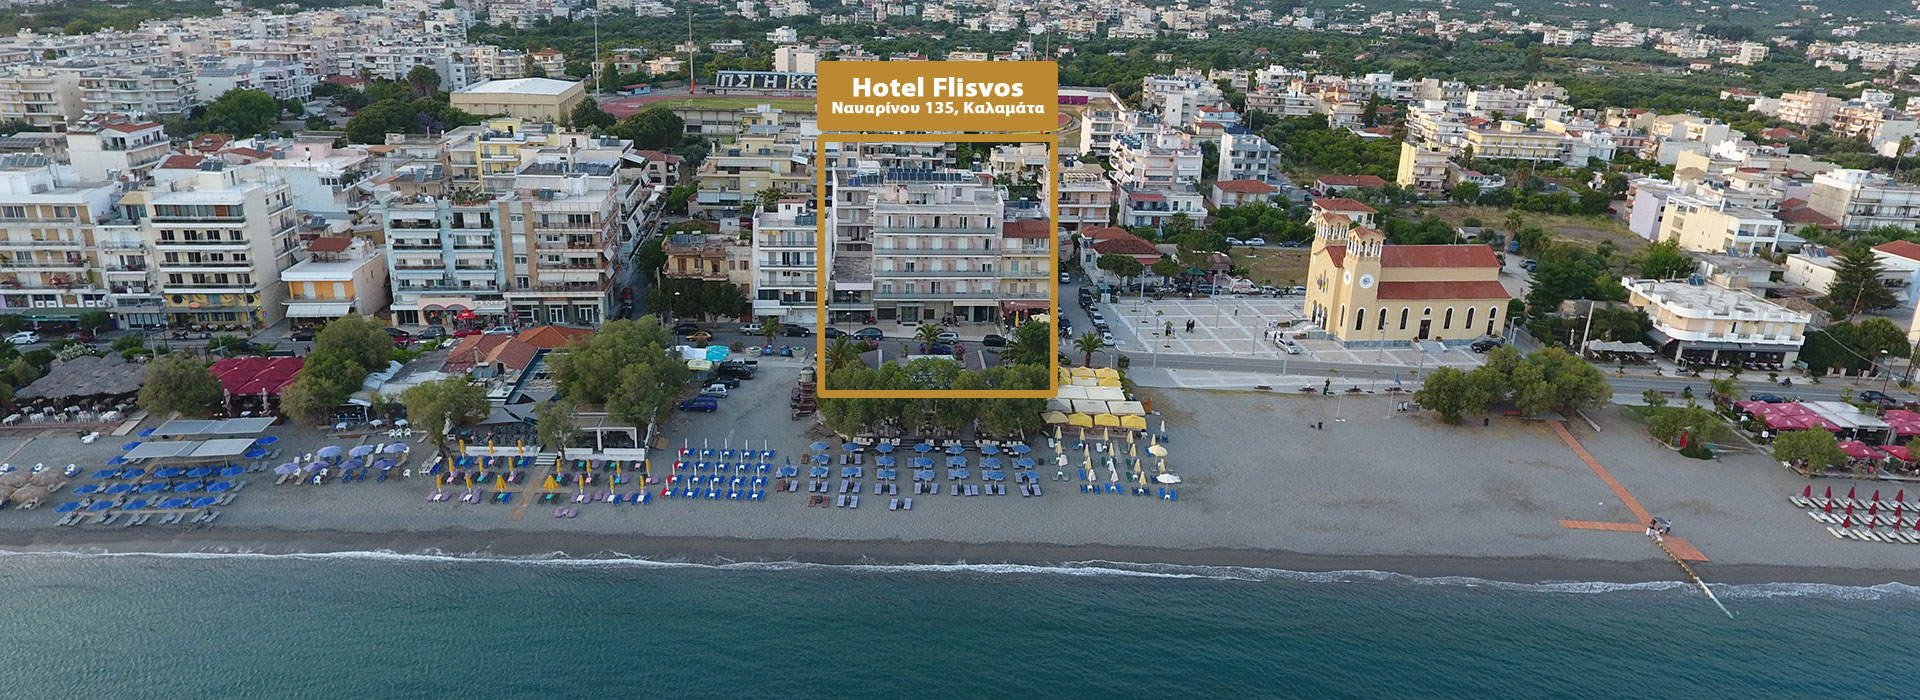 Ξενοδοχείο Φλοίσβος, μπροστά στην θάλασσα